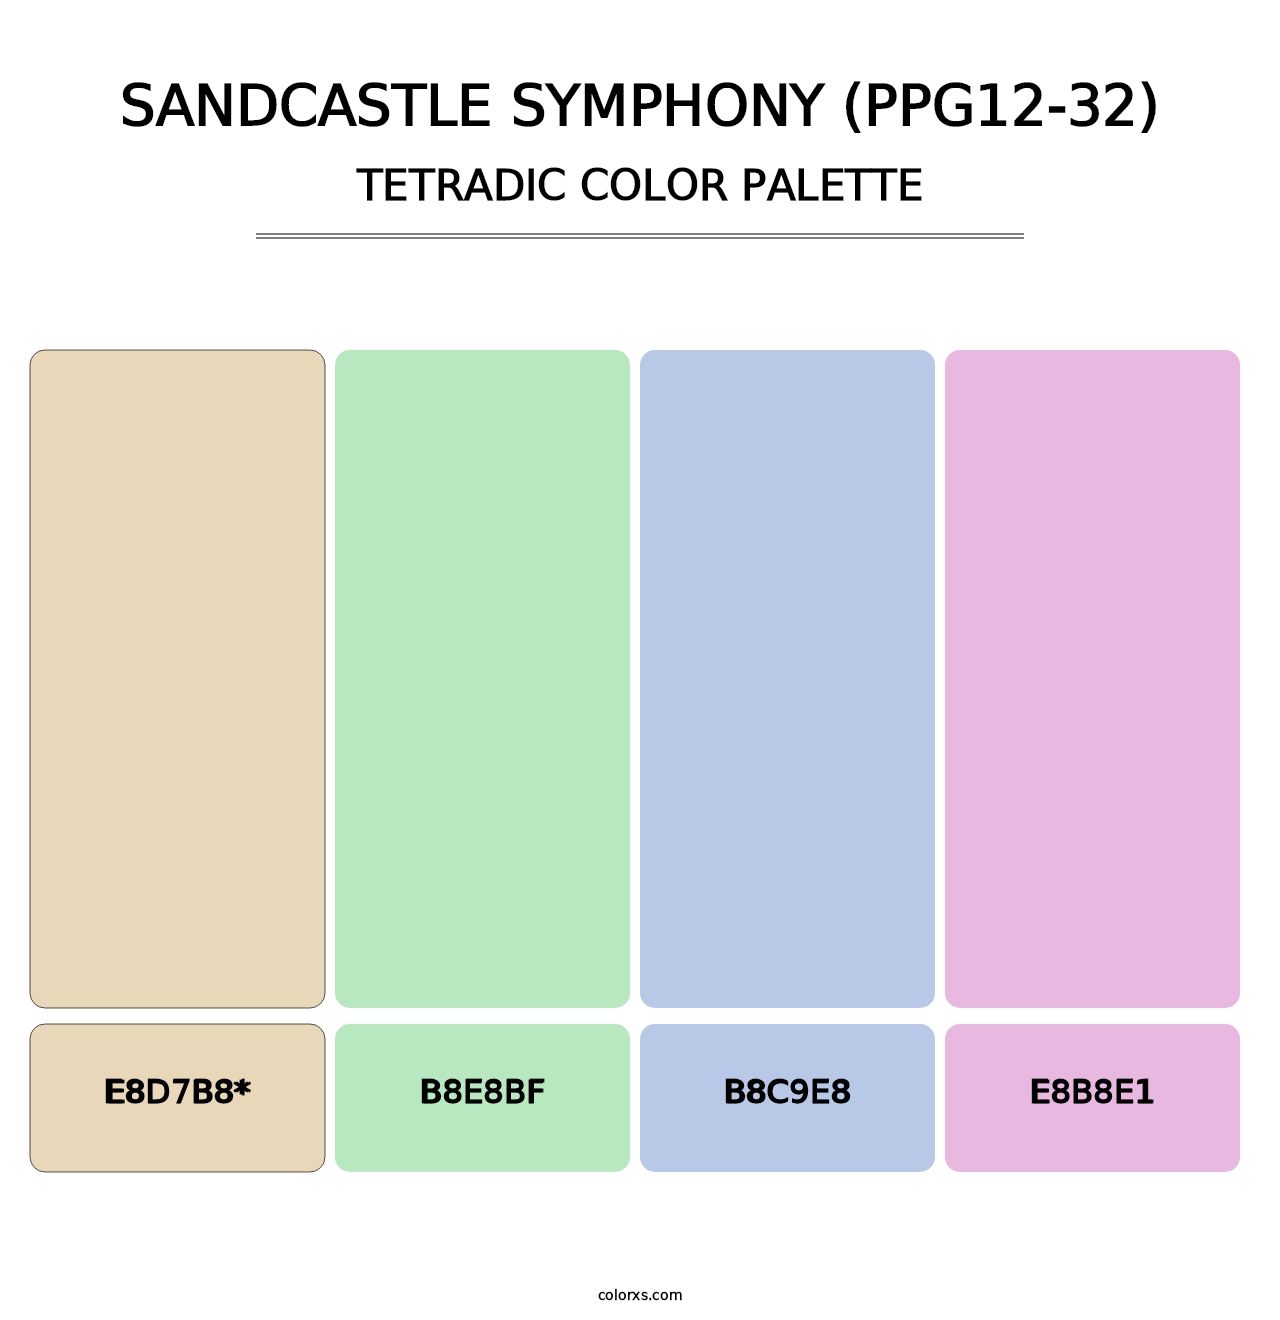 Sandcastle Symphony (PPG12-32) - Tetradic Color Palette